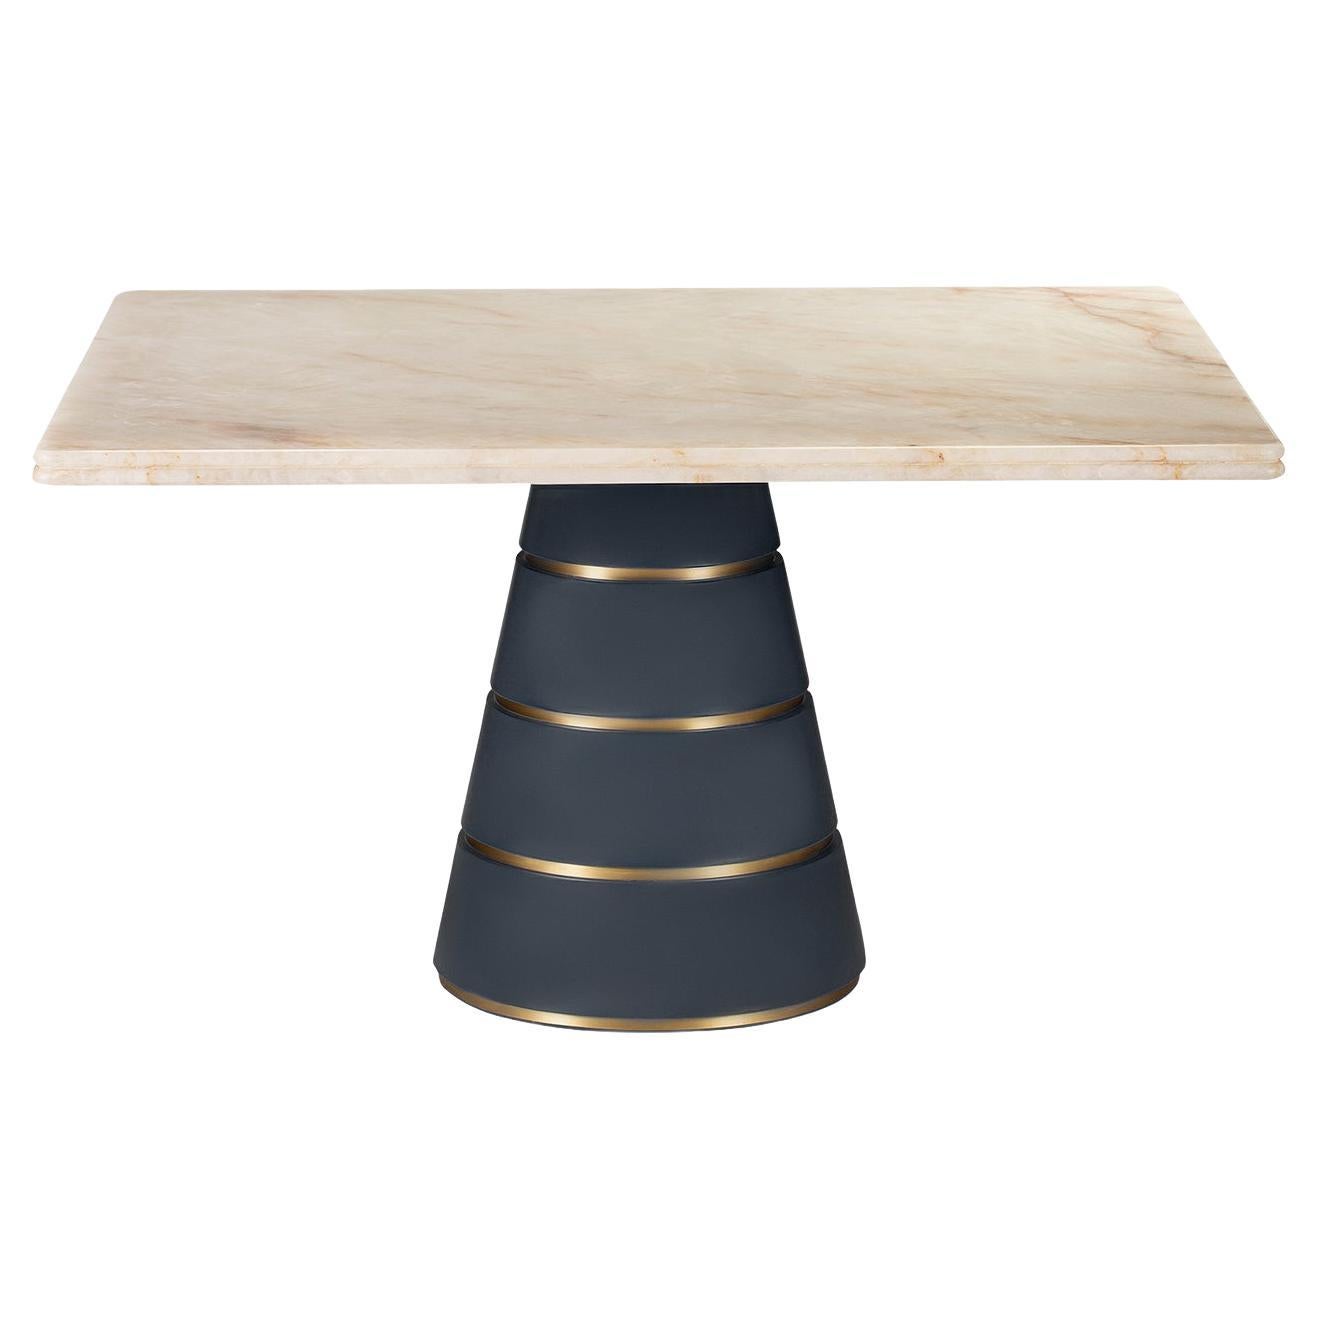 Vesuvio Square Table 